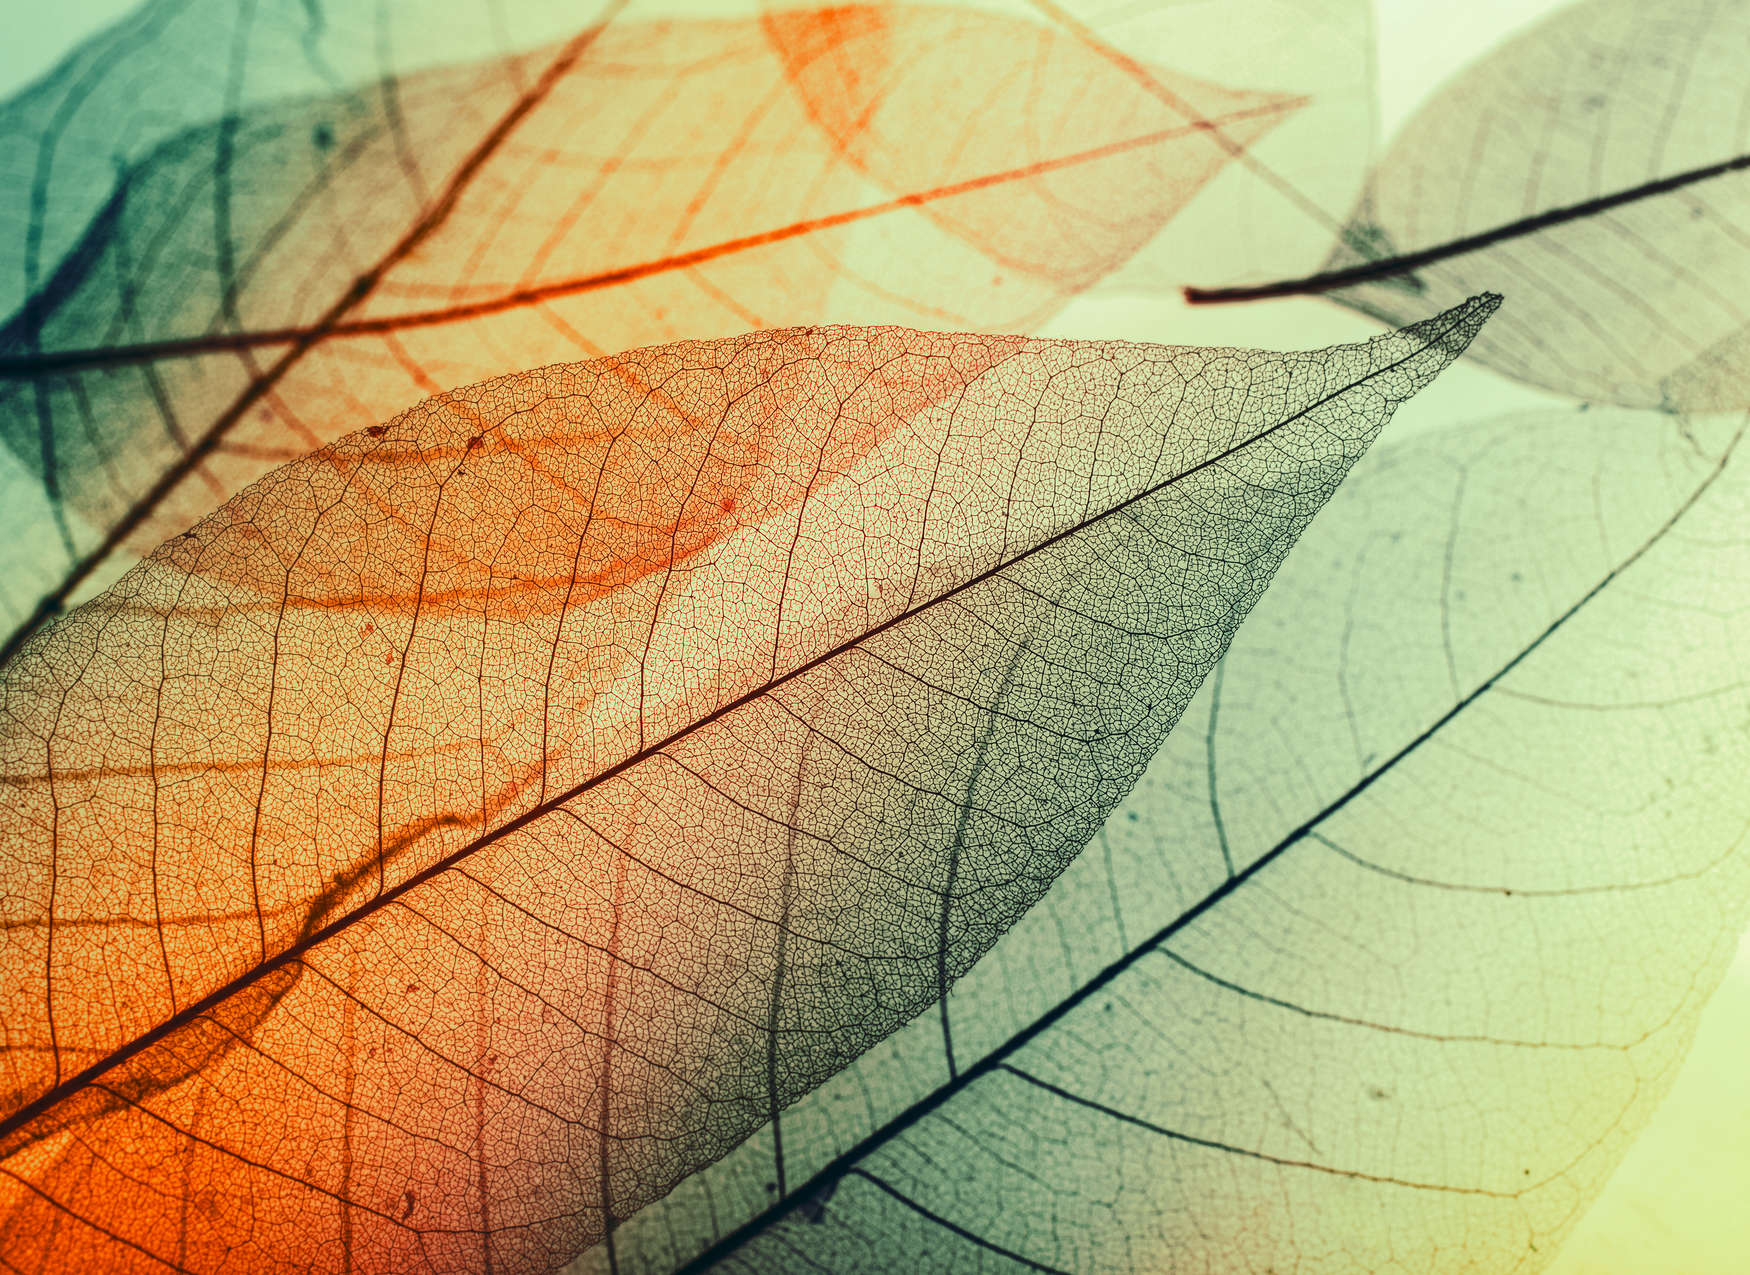             Leaf Design Wallpaper - Green, Orange, Black
        